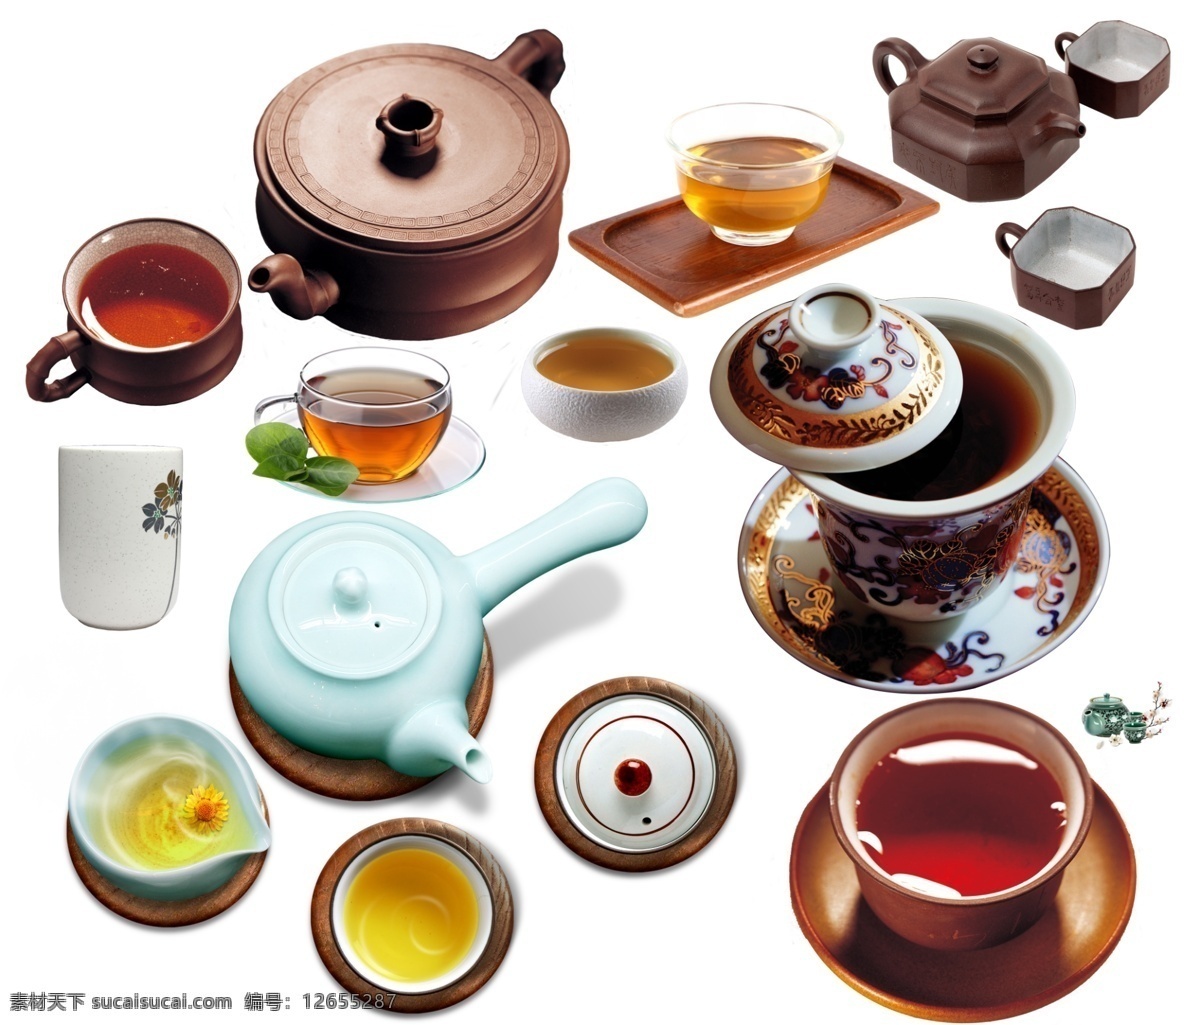 中国古典茶盏 古典茶盏 中国风 茶杯 托盘 茶壶 古典 茶盏 意蕴 茶汤 分层